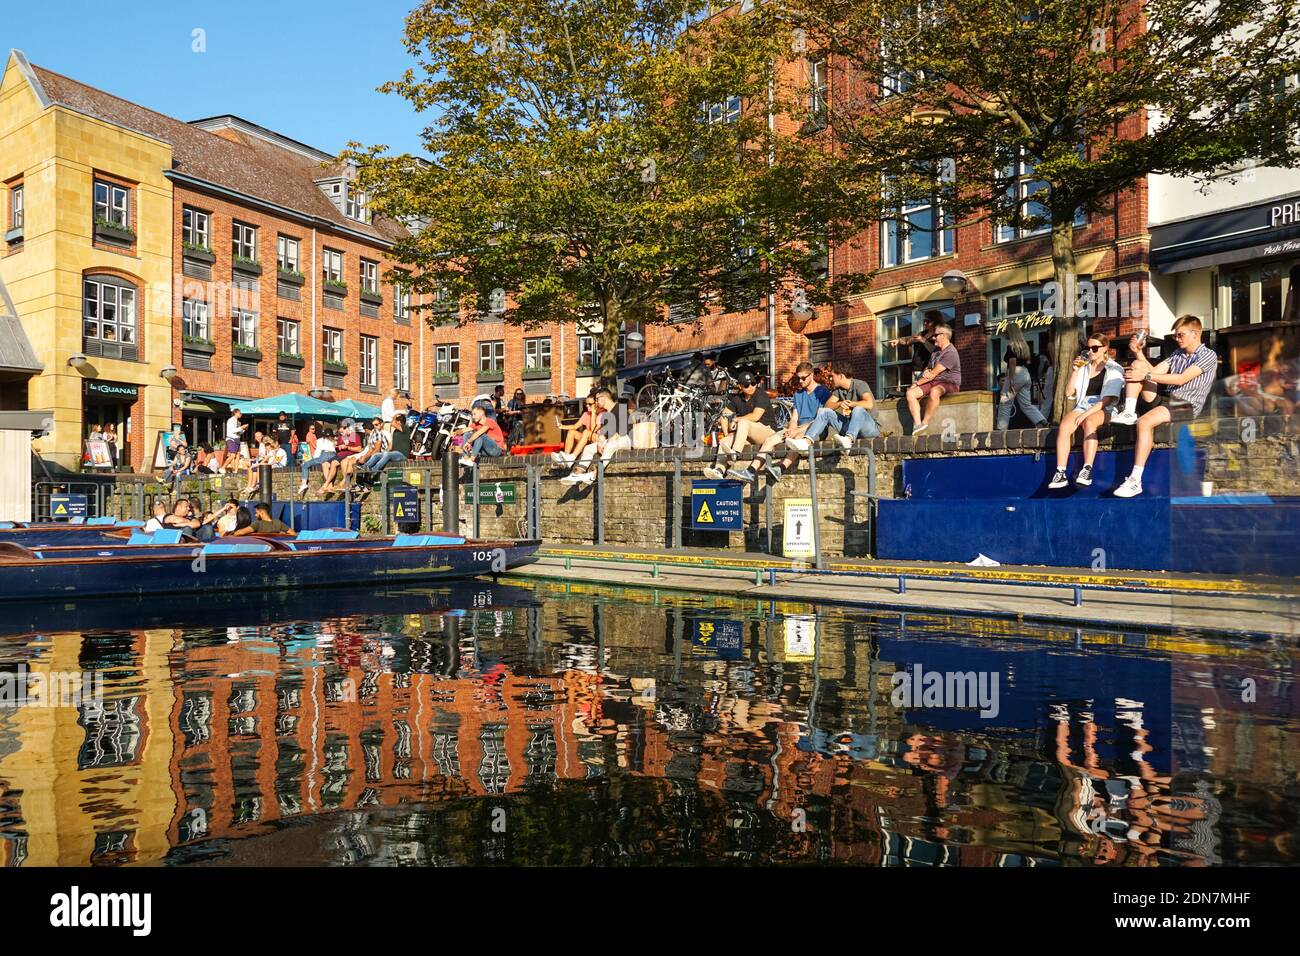 Jeunes assis et buvant sur la rive de la rivière Cam à Cambridge, Cambridgeshire Angleterre Royaume-Uni Banque D'Images